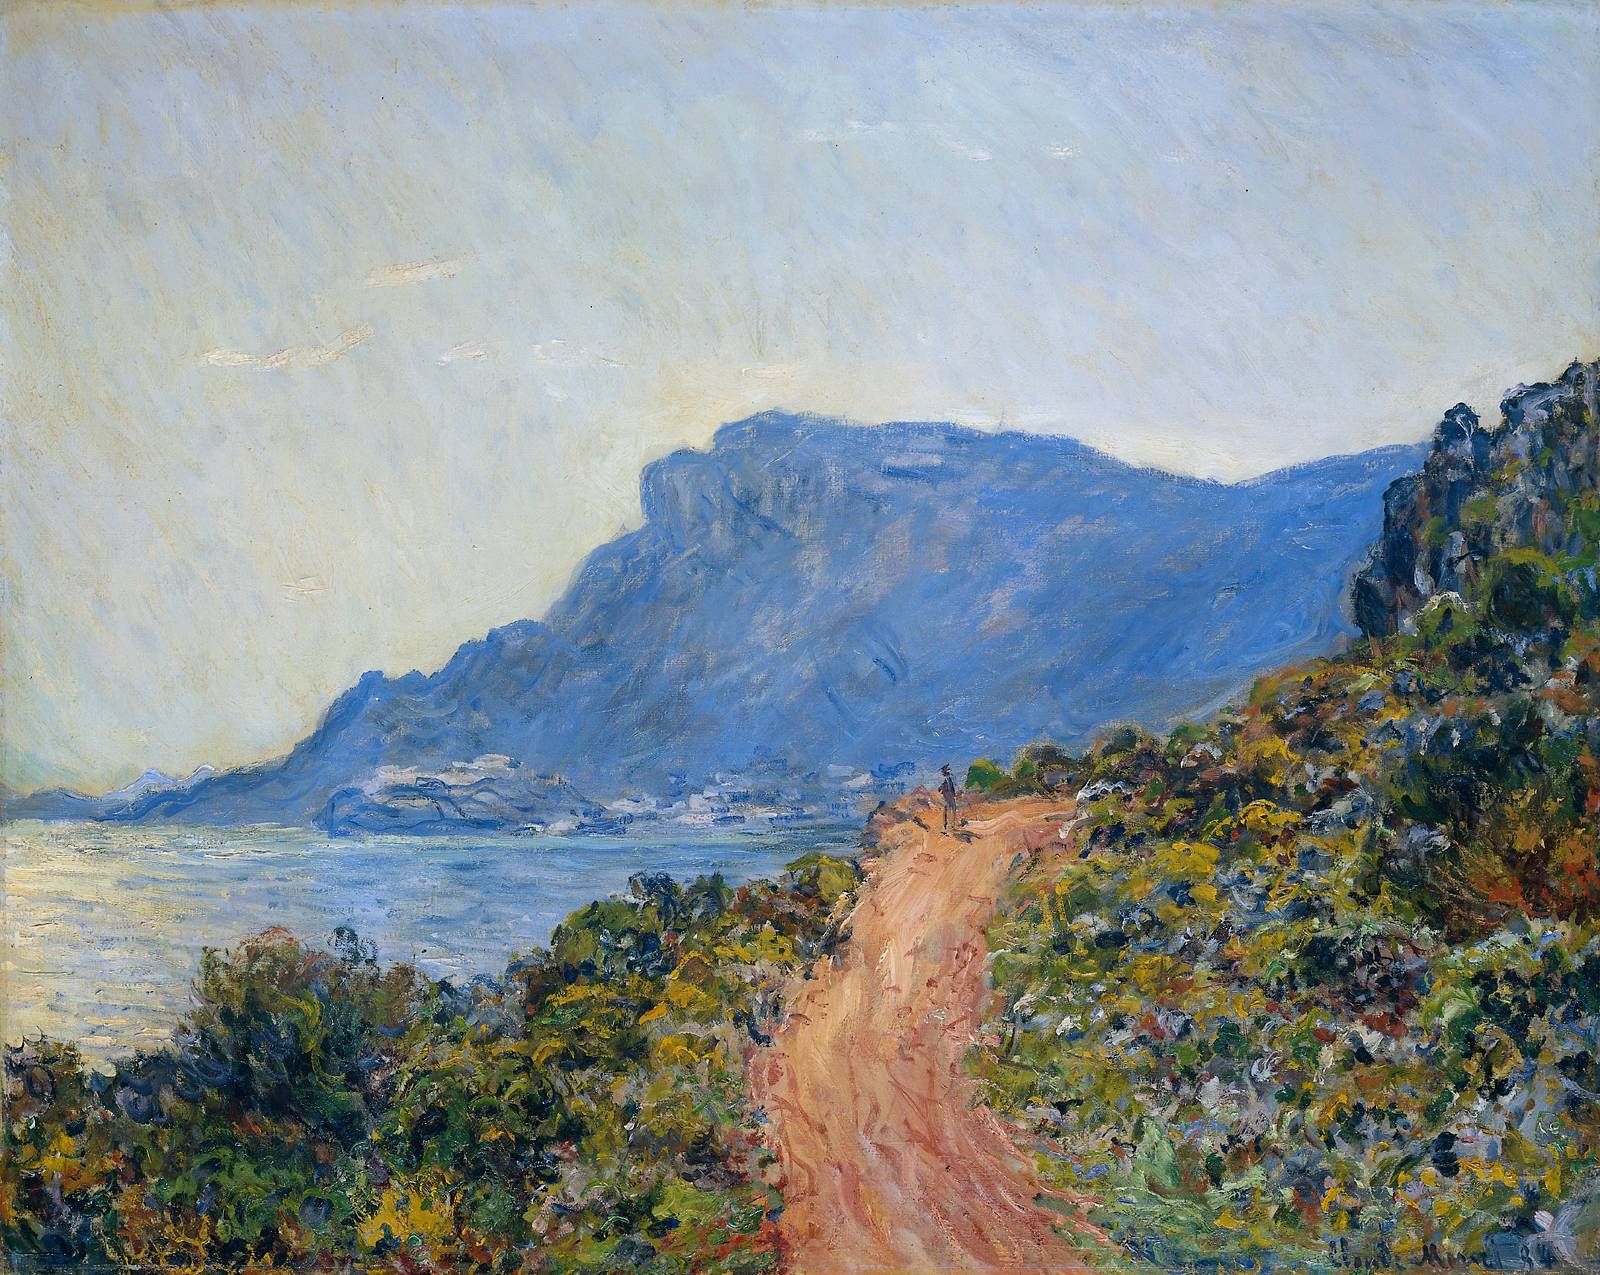 File:Claude Monet - La Corniche near Monaco (1884).jpg - Wikimedia Commons